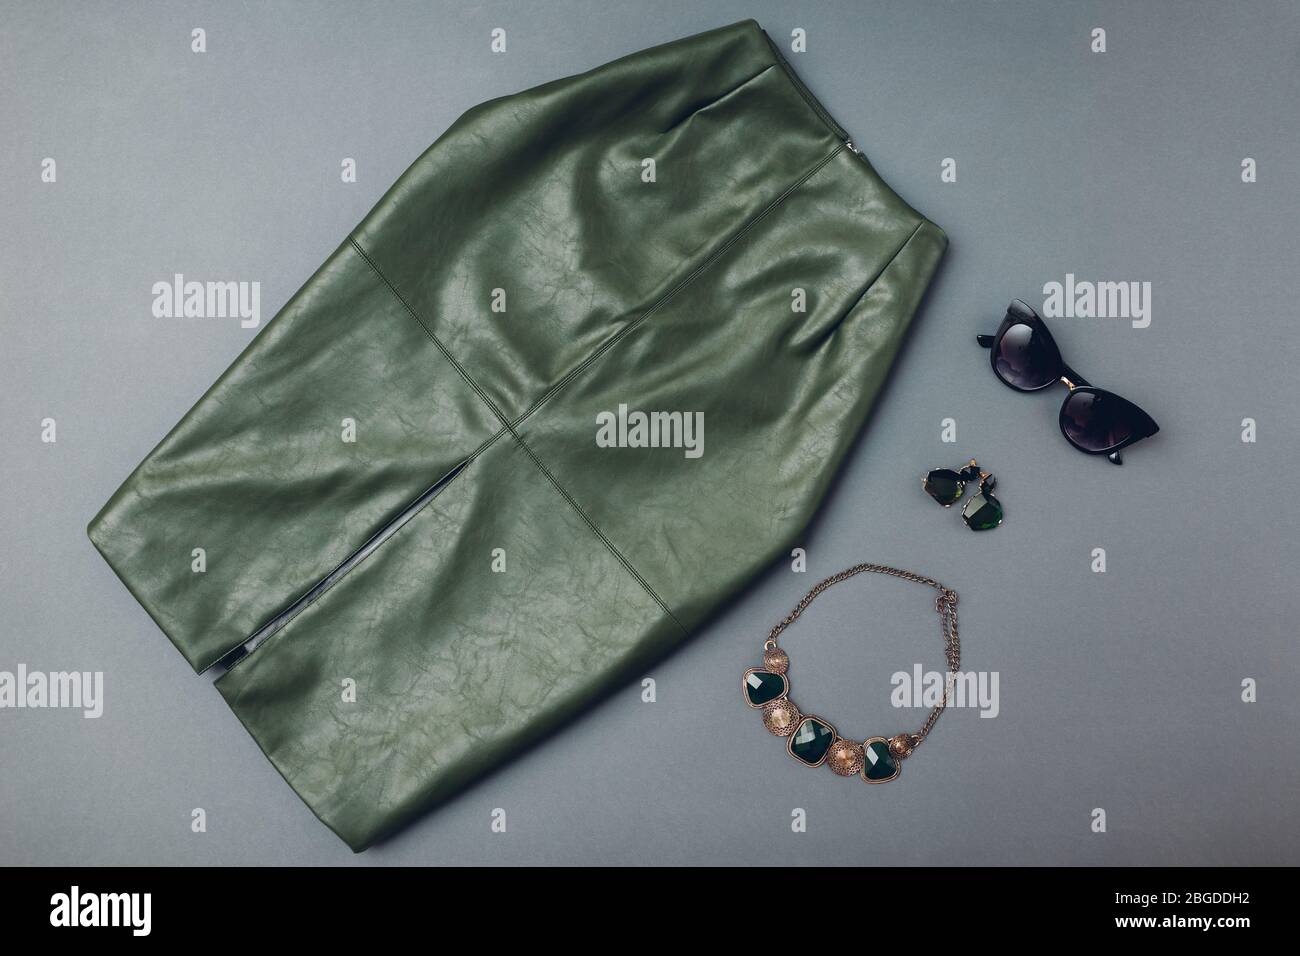 Modischer Lederrock mit Schmuck. Frühling Damenbekleidung und Accessoires. Stylisches grünes Rock-Öko-Material. Mode. Stockfoto